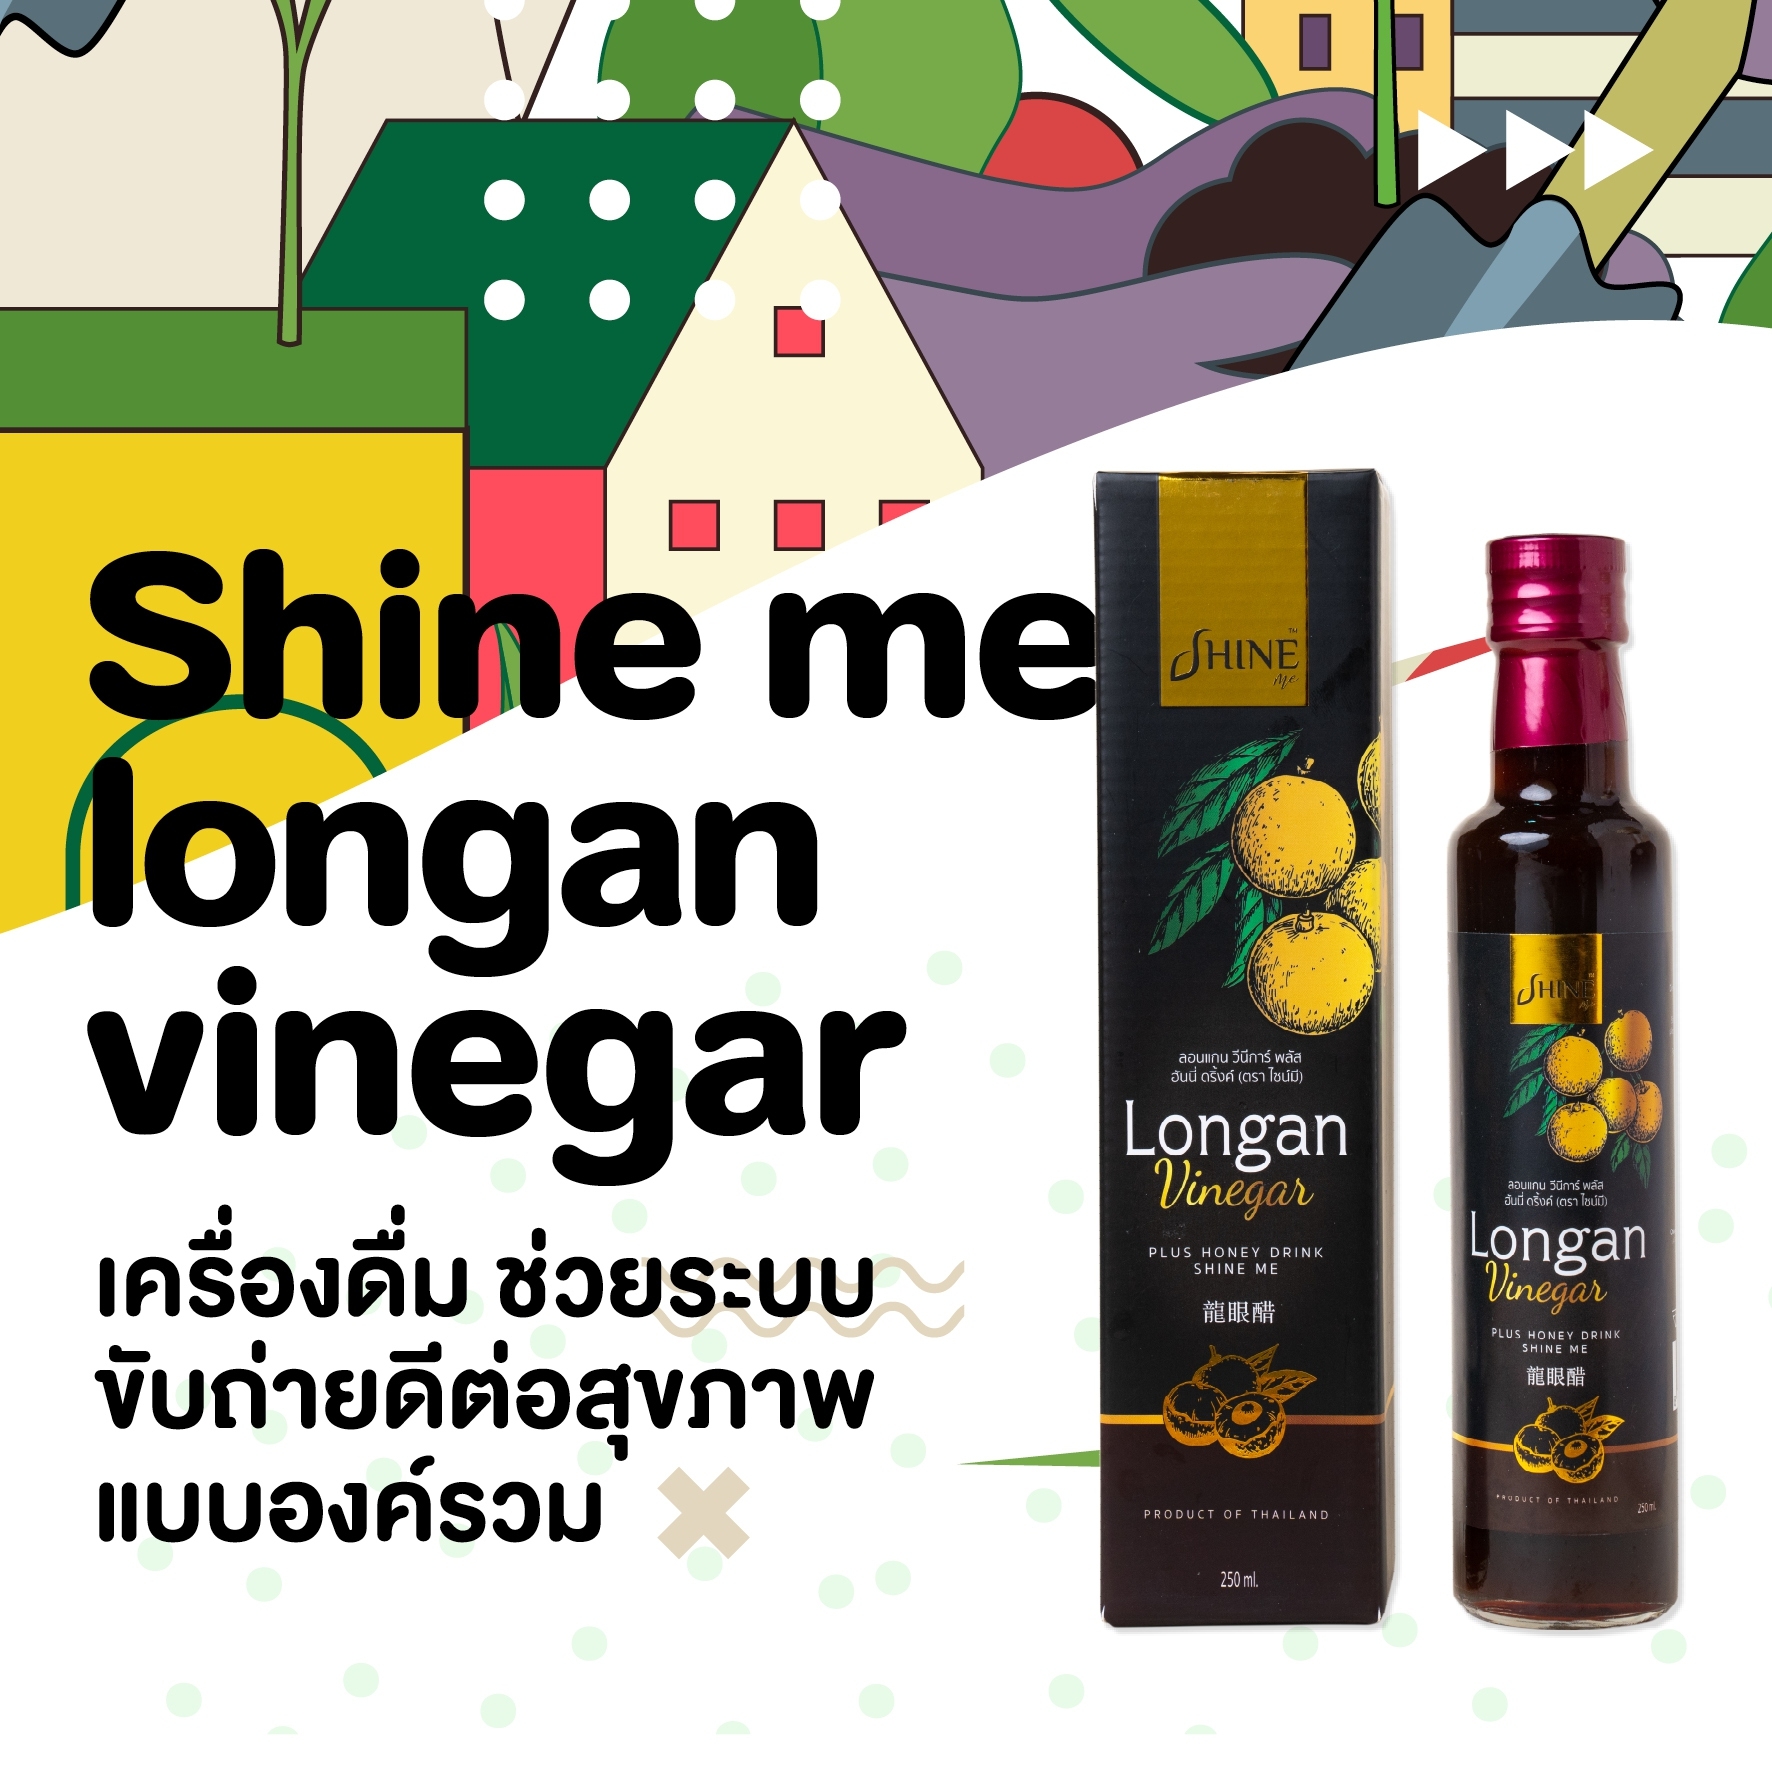 เครื่องดื่ม Shine me longan vinegar